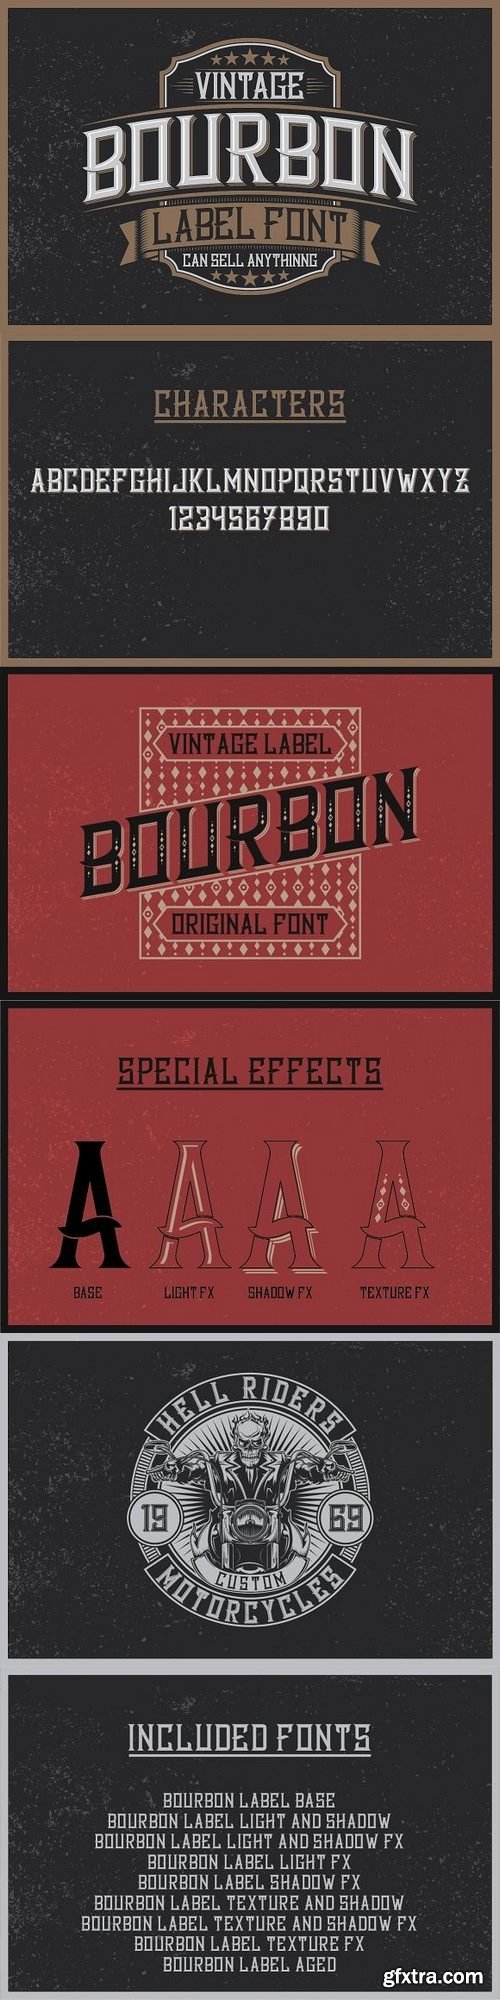 CM - Bourbon Label typeface 1317930